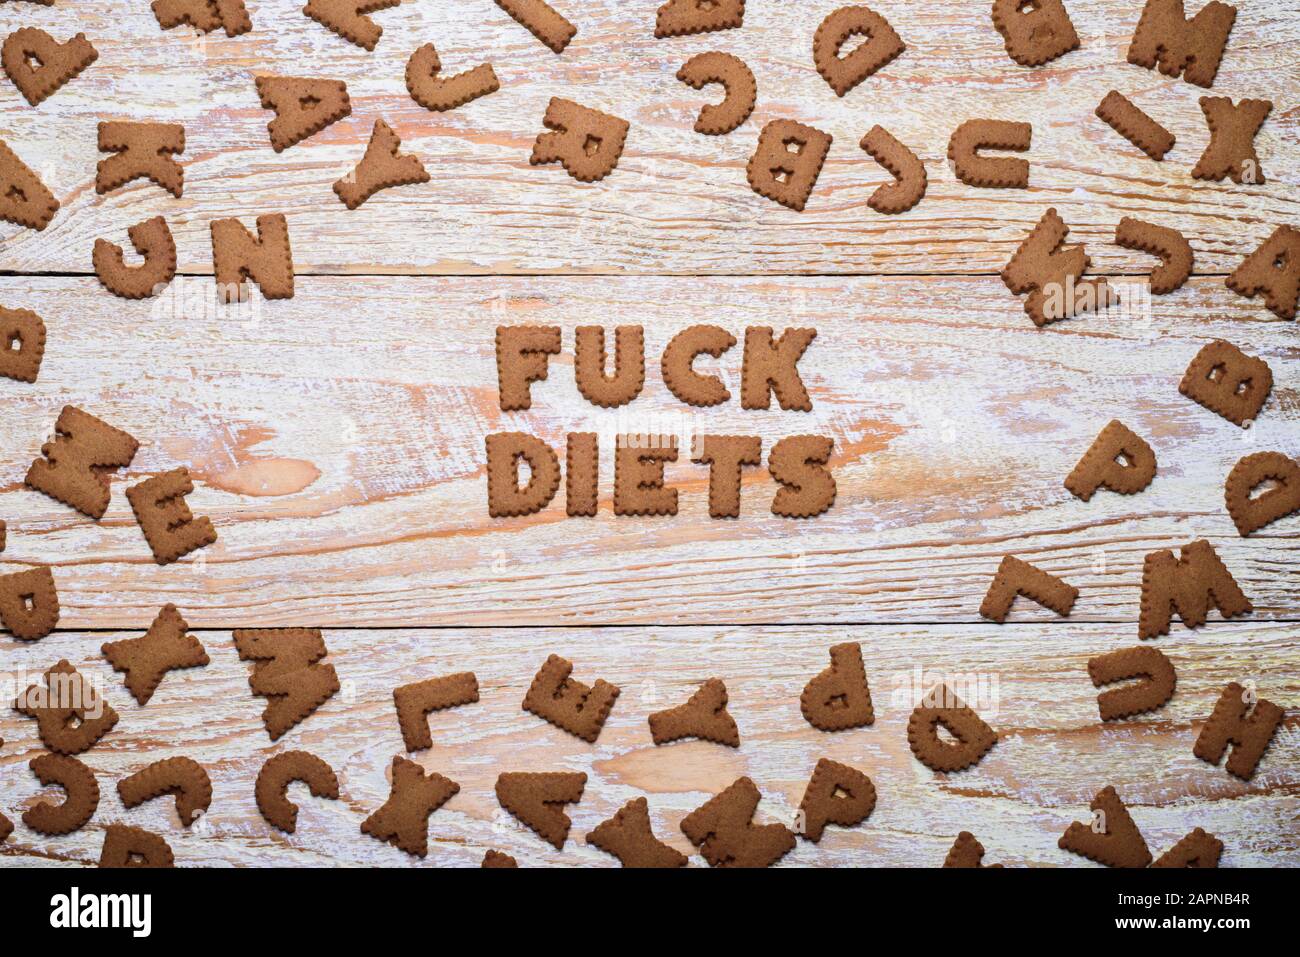 Worte von Cookies auf weißem Holz- Hintergrund Stockfoto